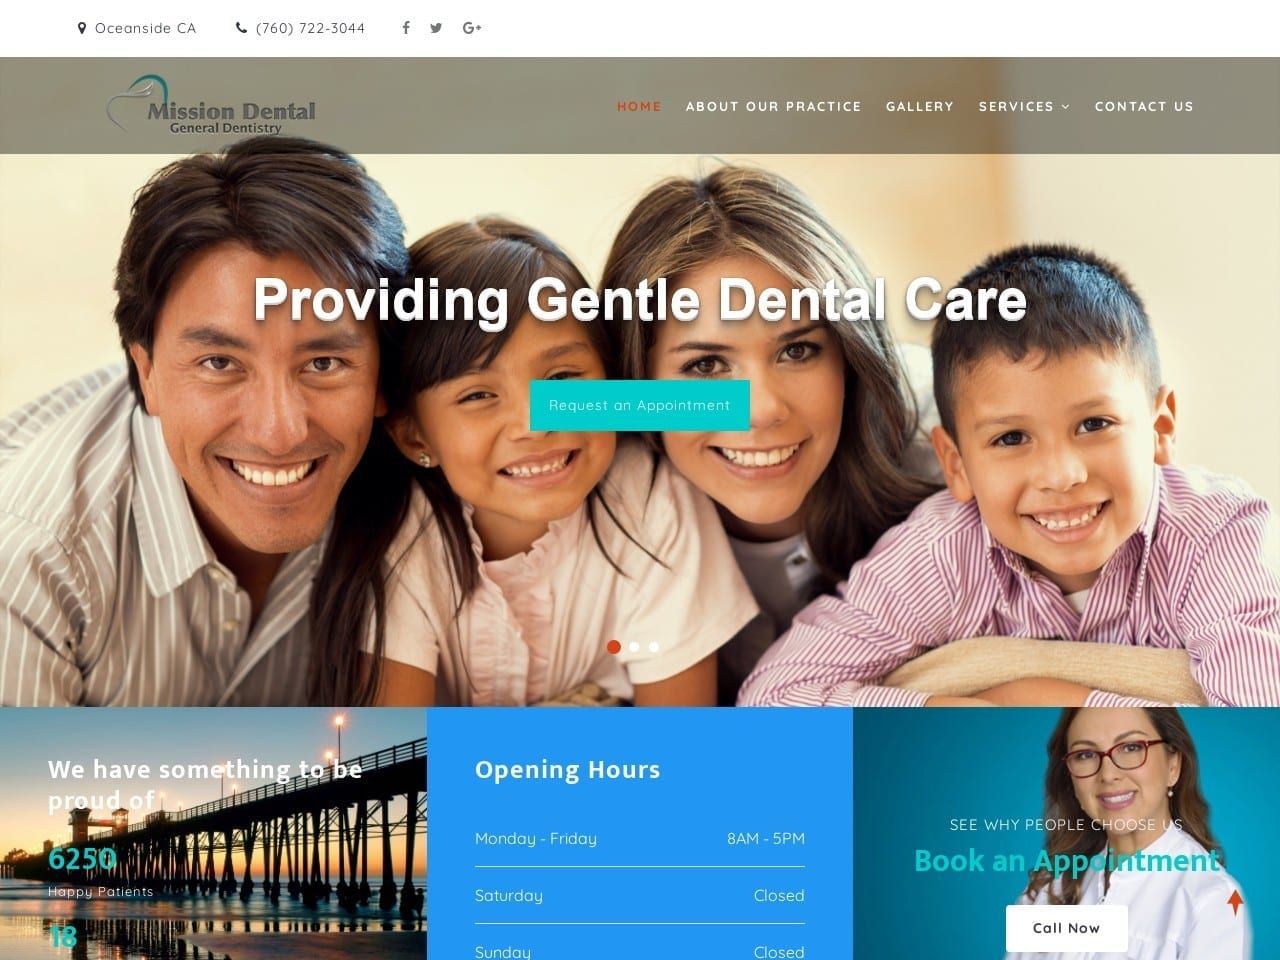 M Dental Care Website Screenshot from mdentalcare.com